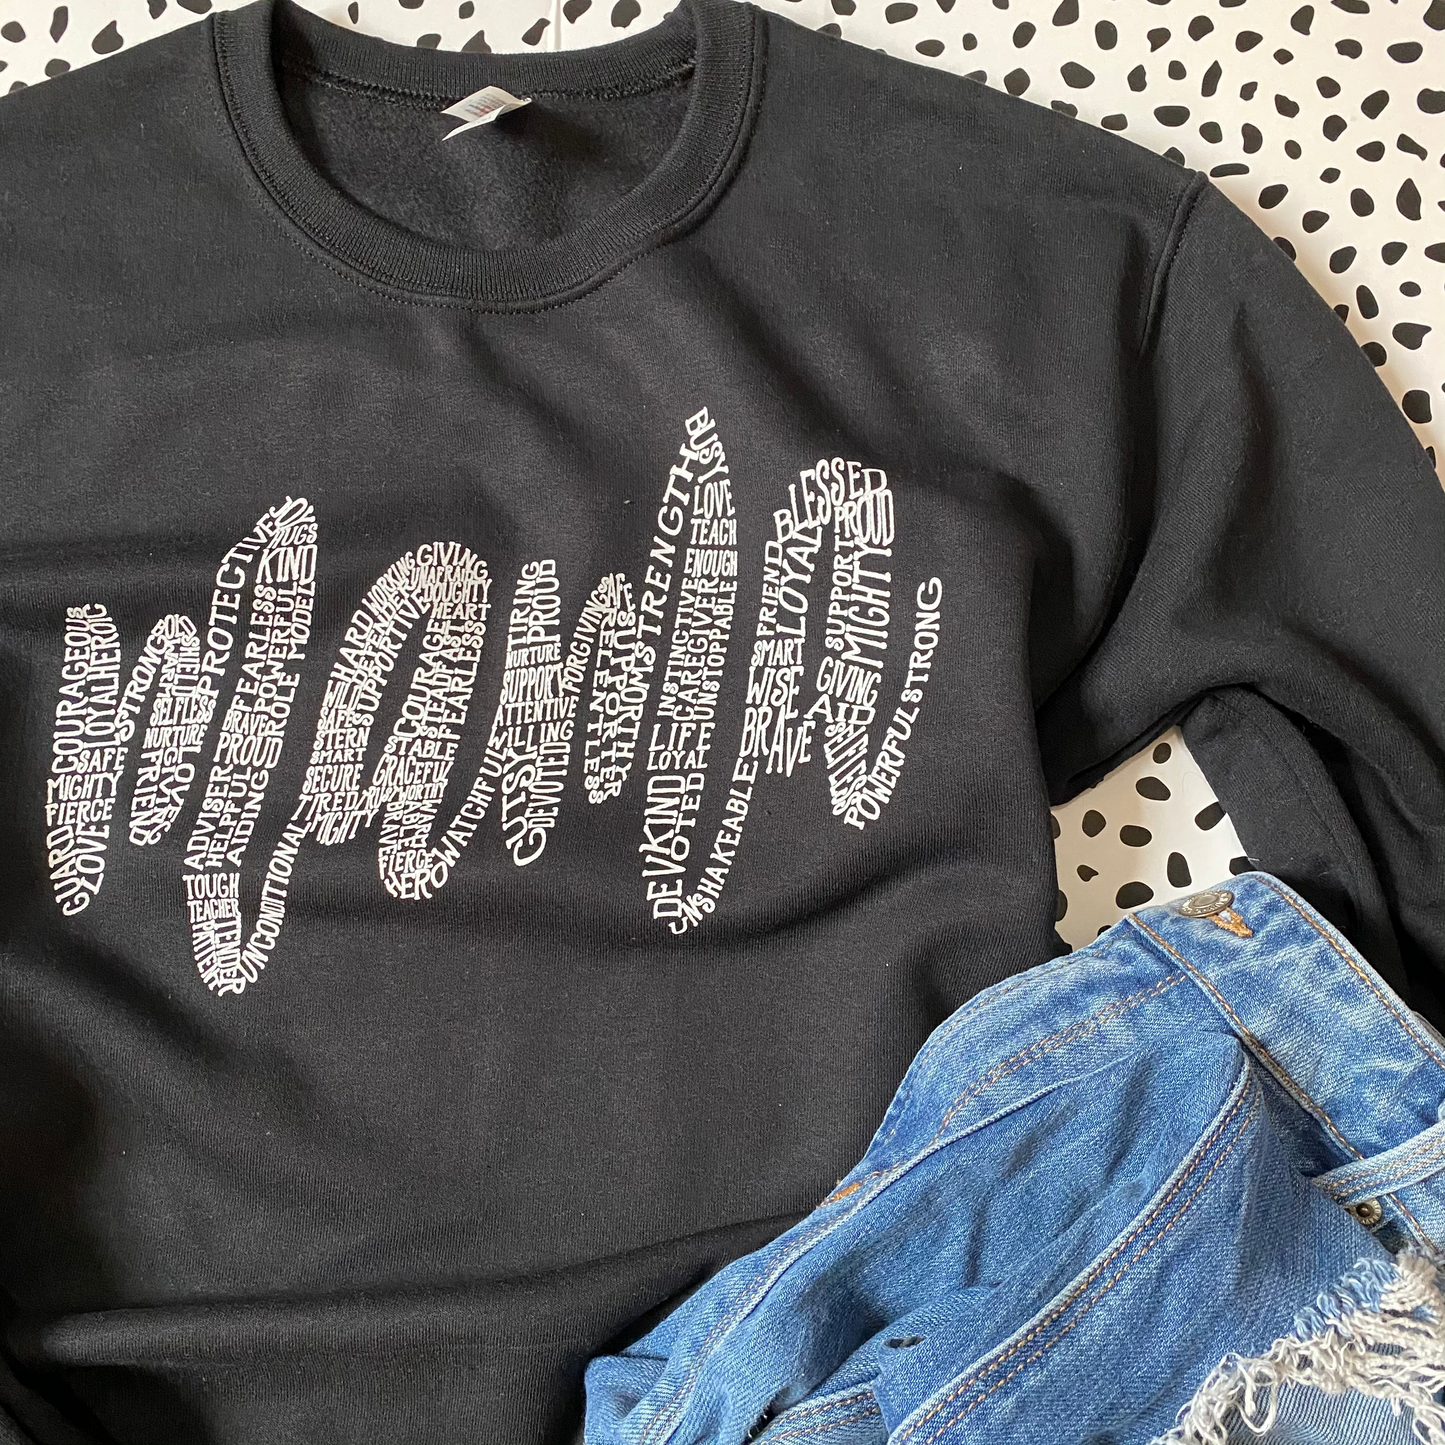 About A Mama - Black sweatshirt